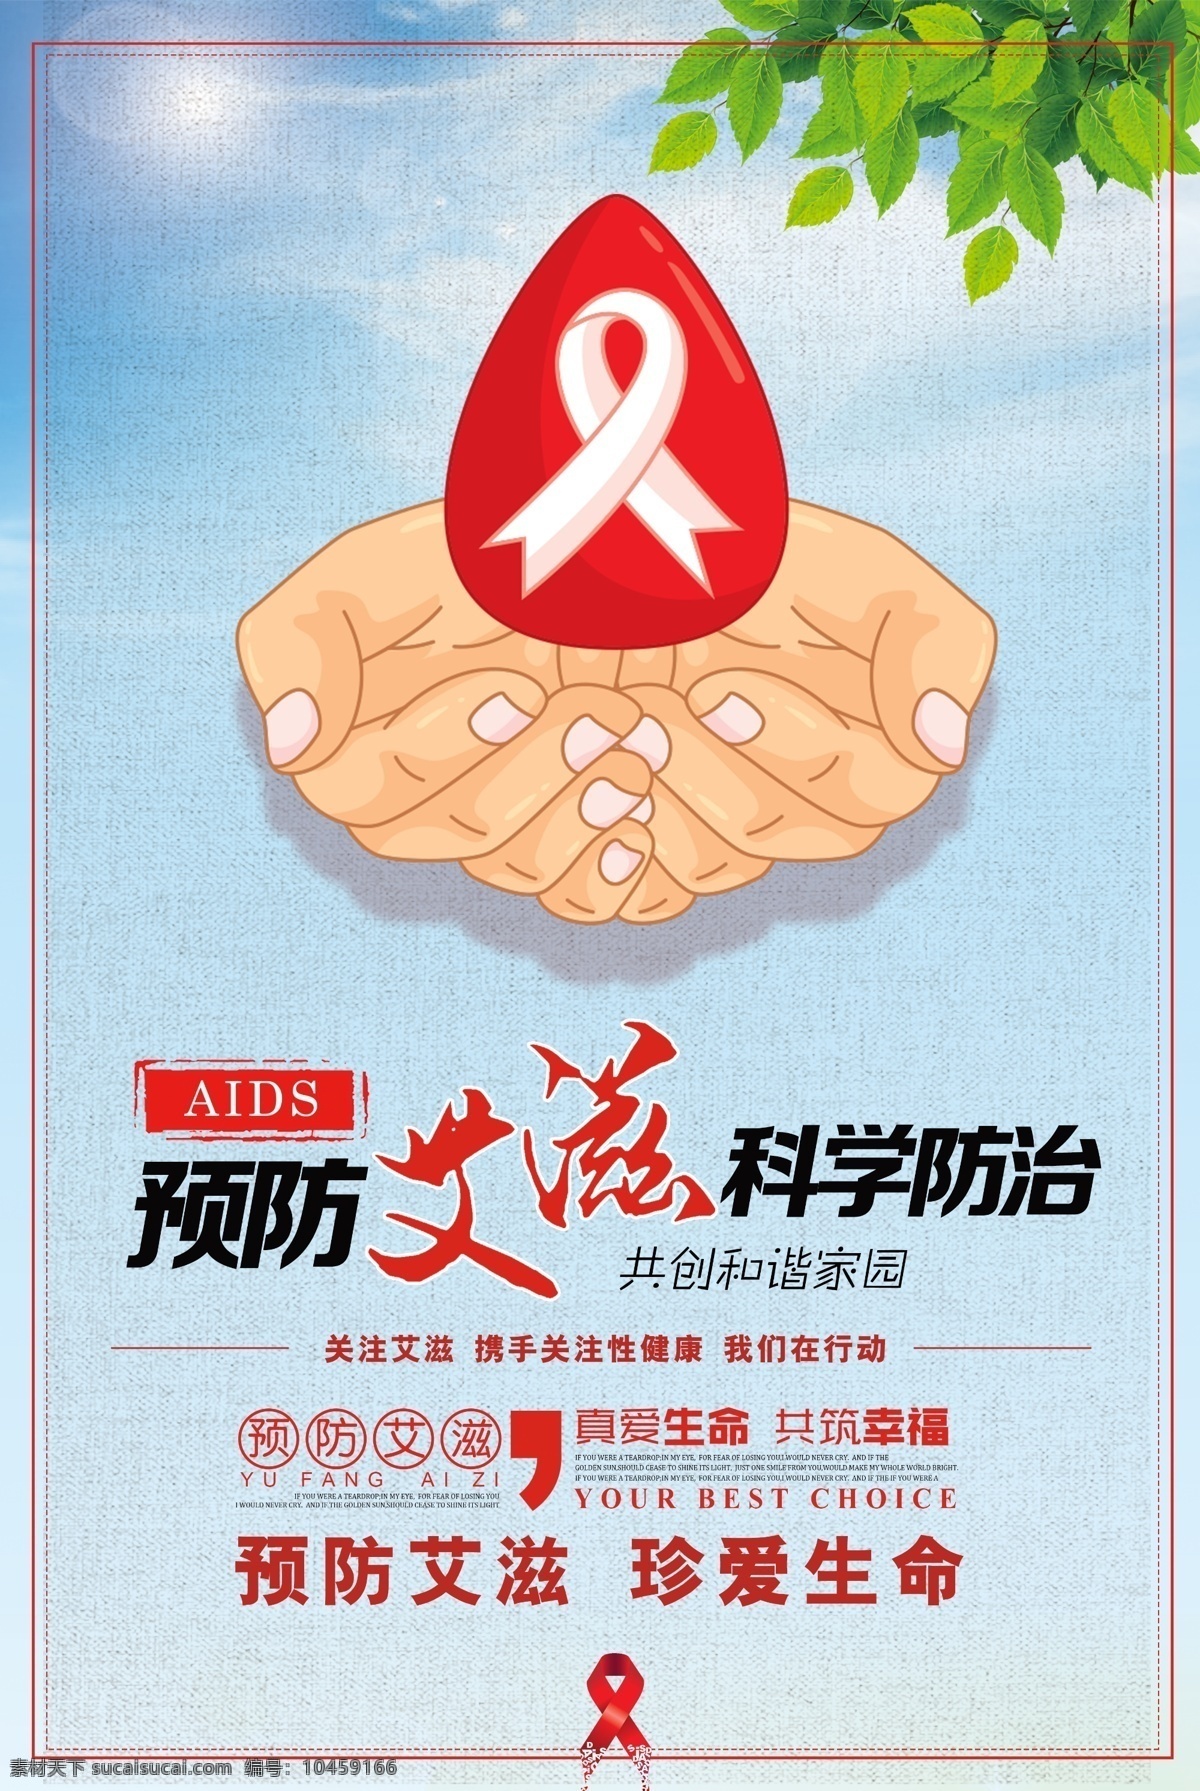 预防艾滋病 海报 科学防治 文字方案 红丝带 双手 树叶 绿叶 蓝天 白云 橱窗海报 世界日